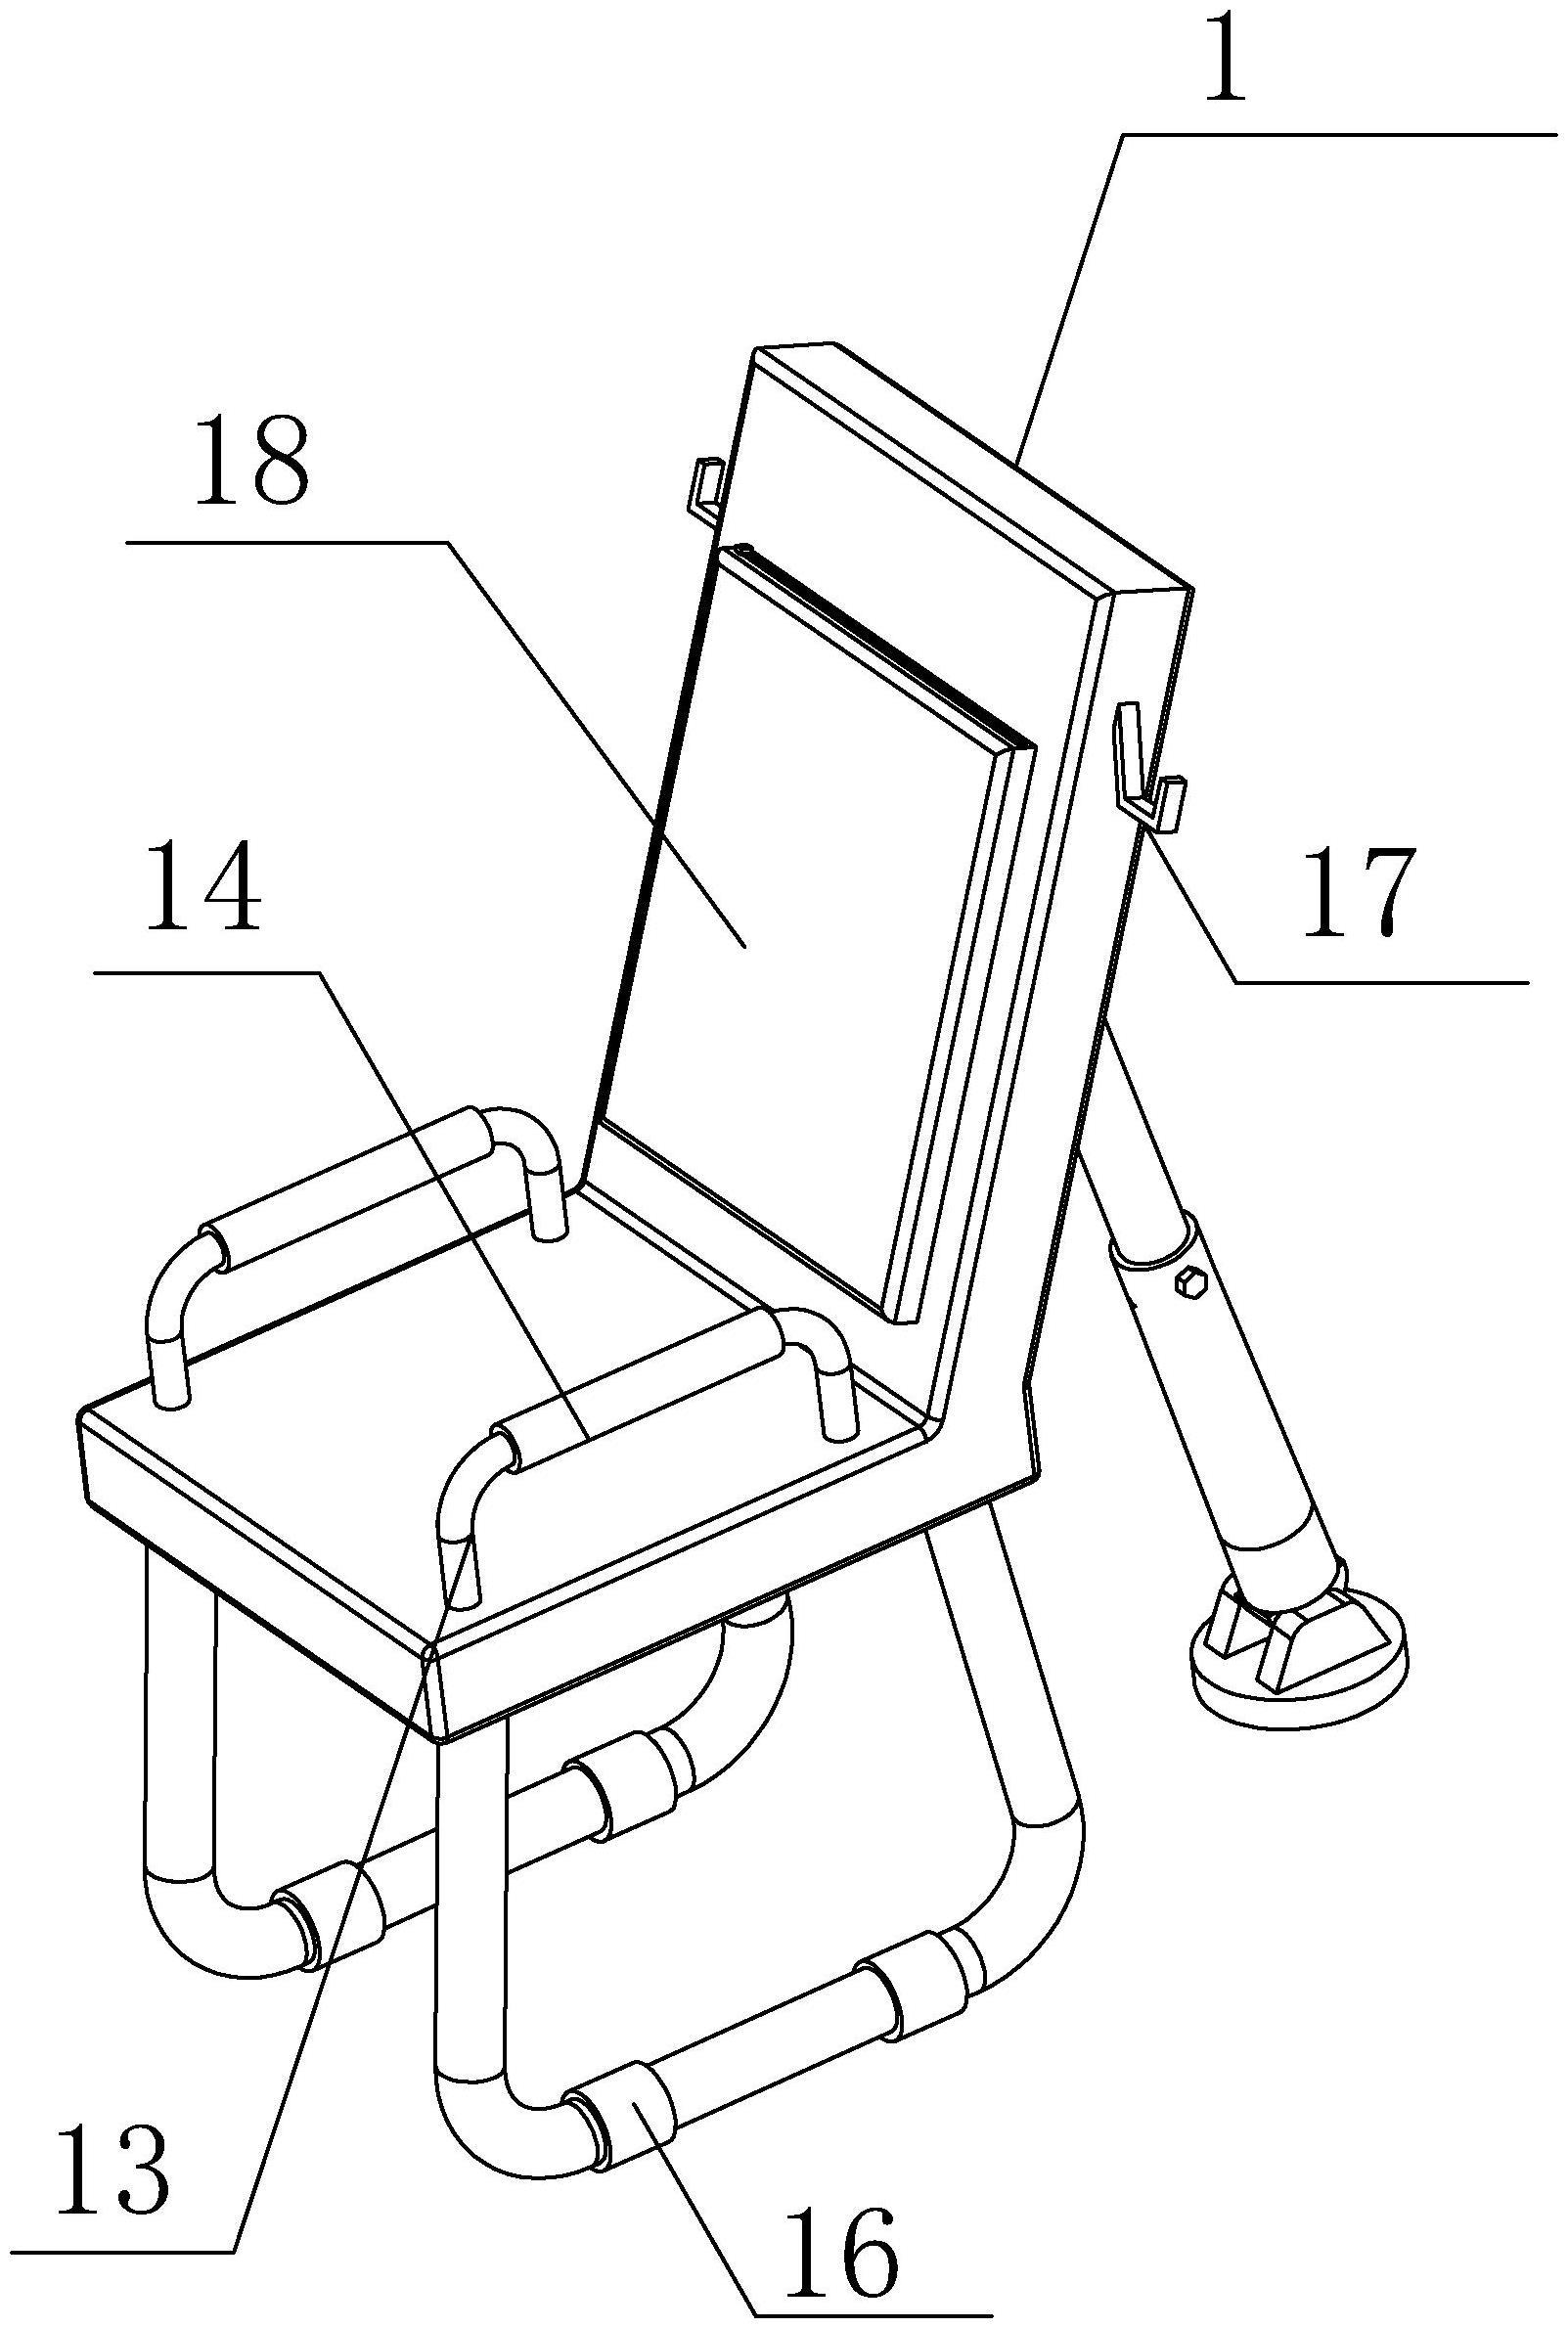 一种具有辅助支撑功能的椅子的制作方法